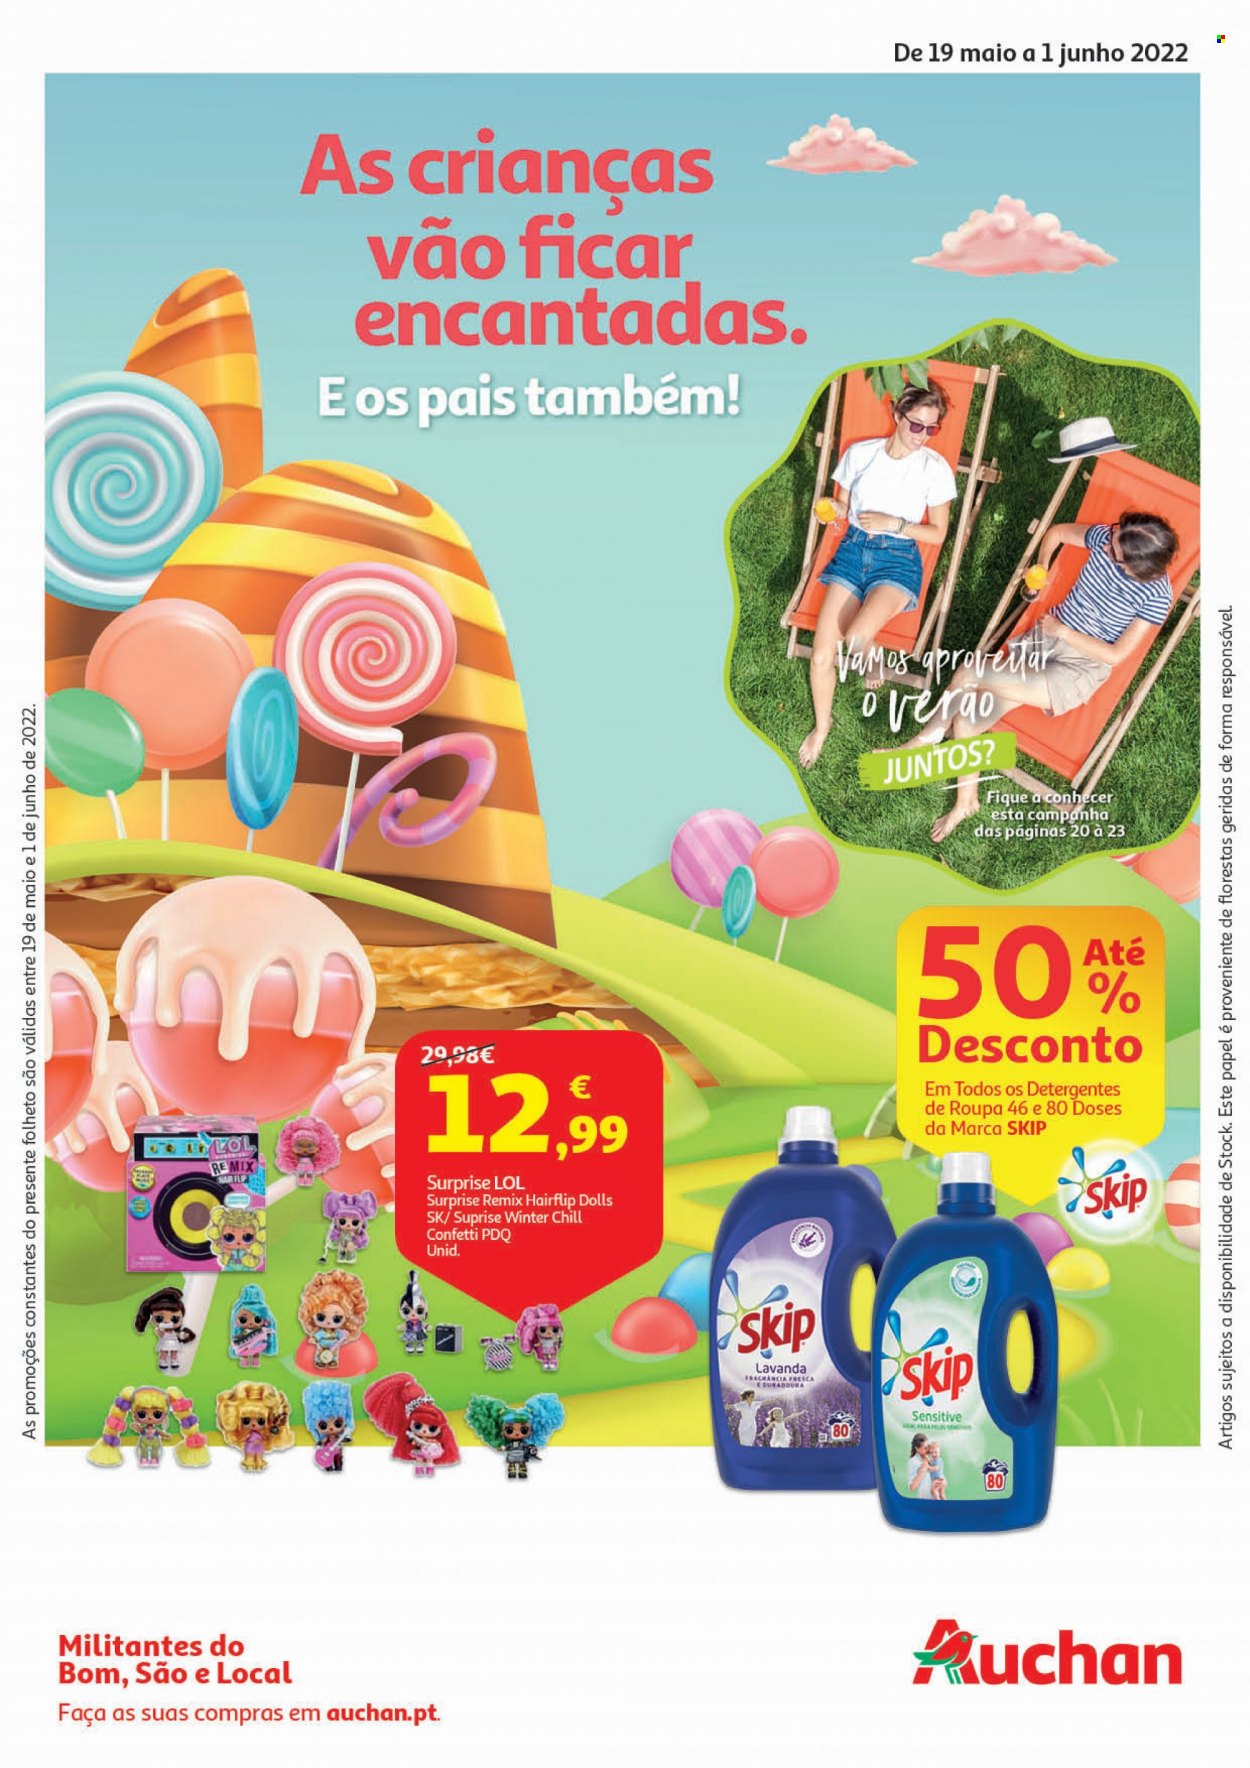 thumbnail - Folheto Auchan - 19.5.2022 - 1.6.2022 - Produtos em promoção - detergente, Skip. Página 1.